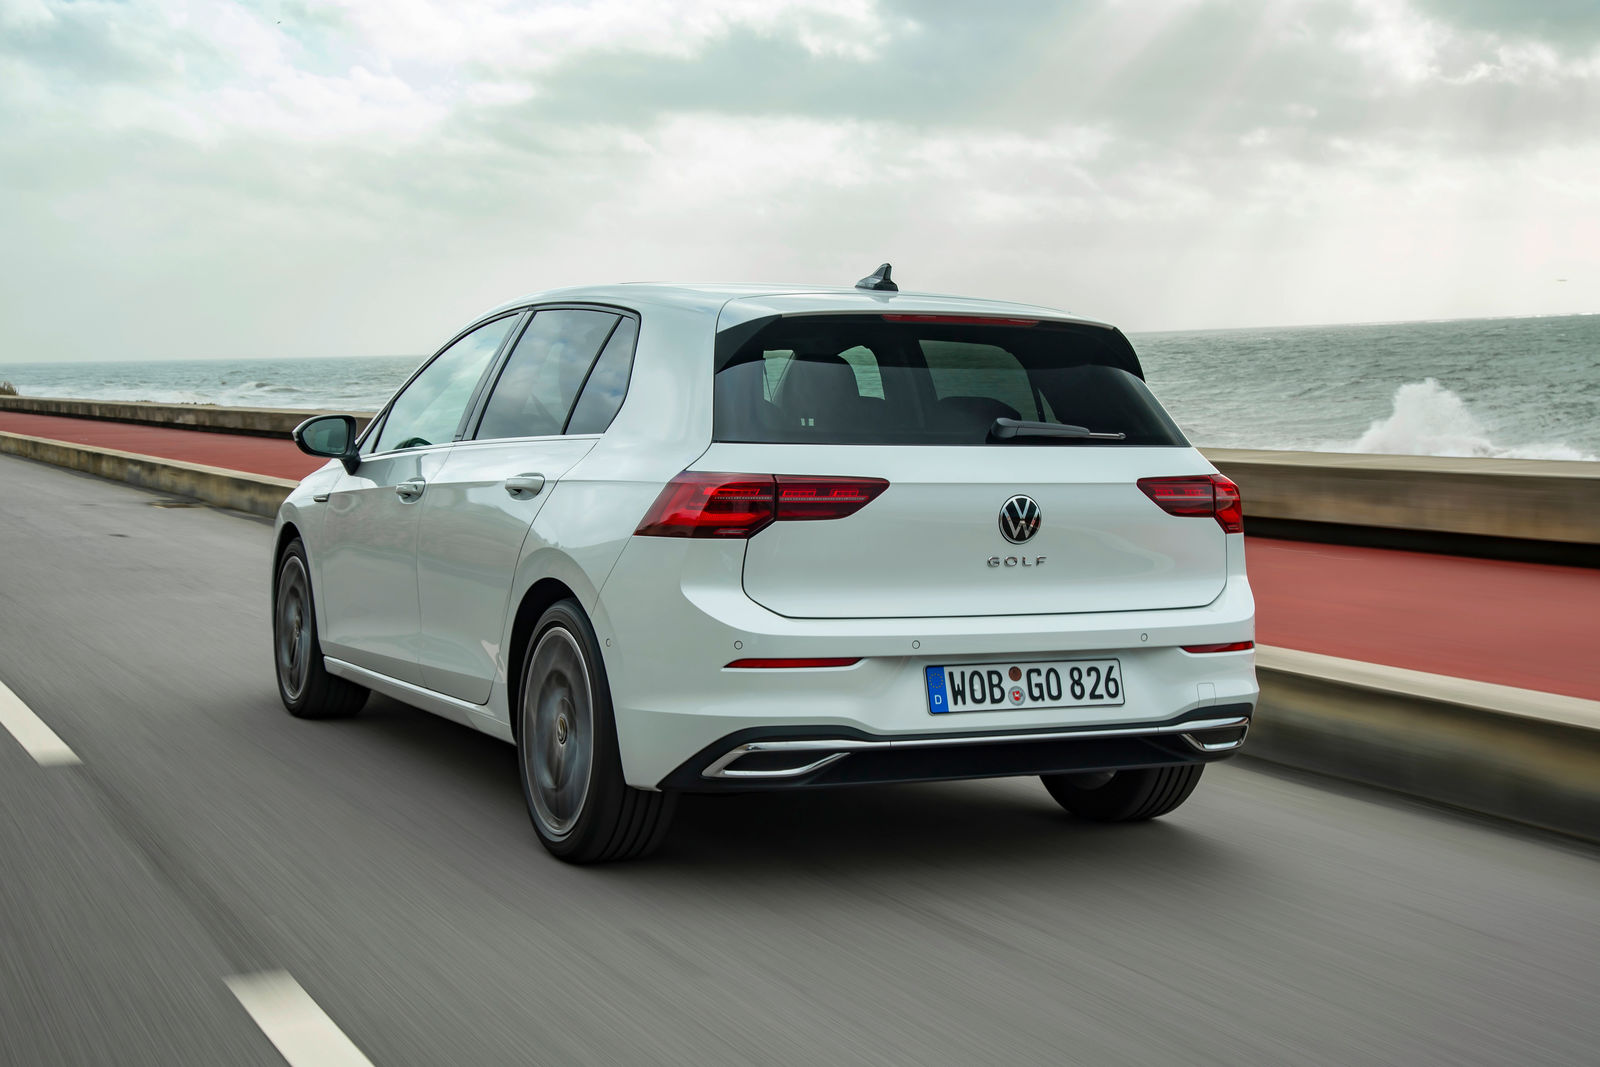 Knooppunt Haven lichten The technical data of the new Golf | Volkswagen Newsroom